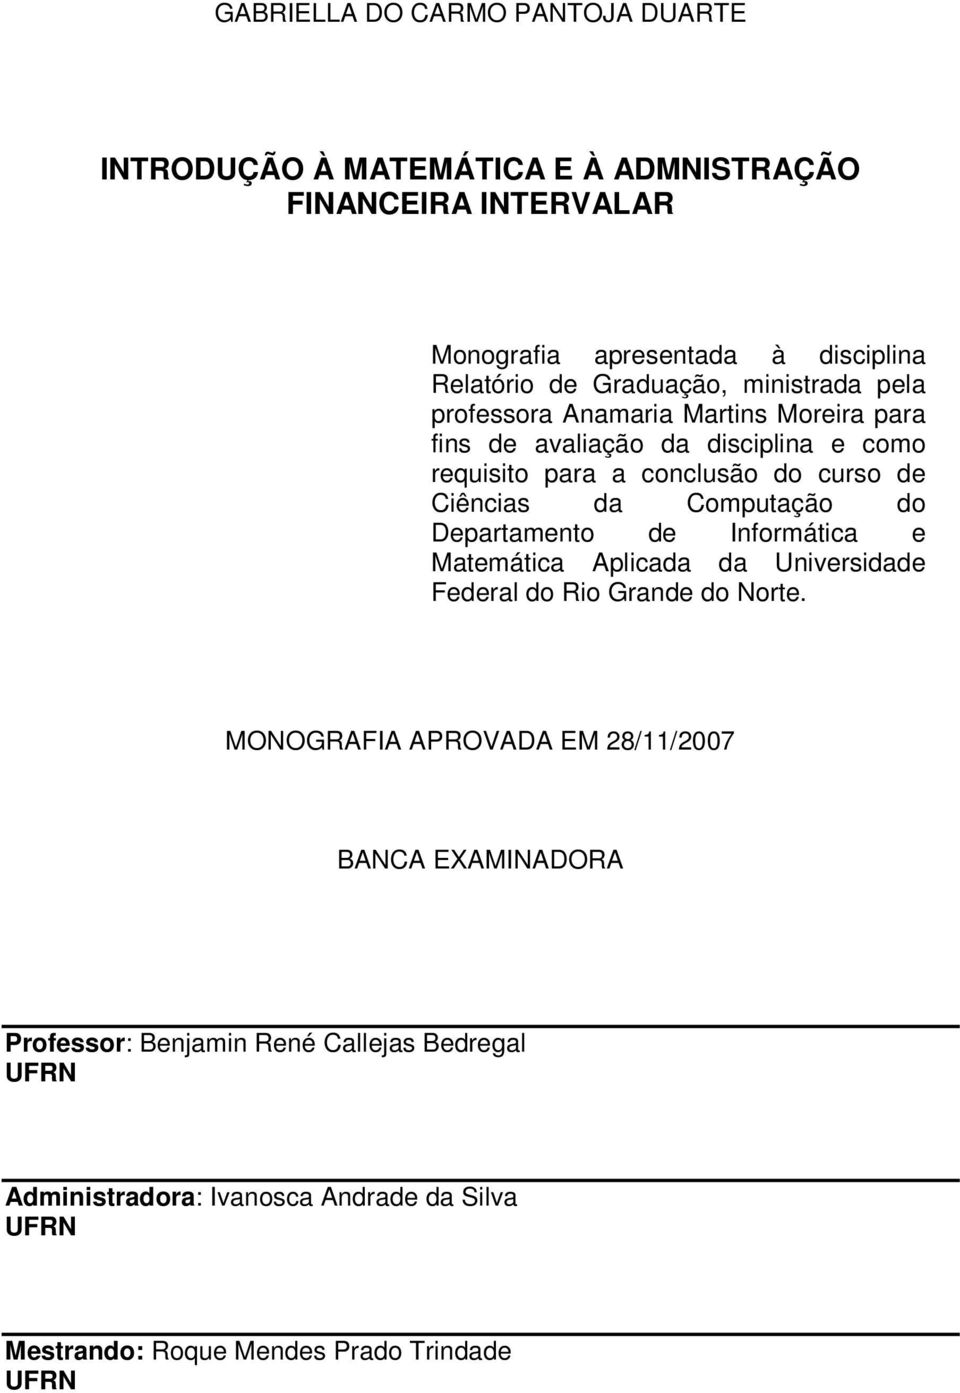 Ciêcias da Computação do Departameto de Iformática e Matemática Aplicada da Uiversidade Federal do Rio Grade do Norte.